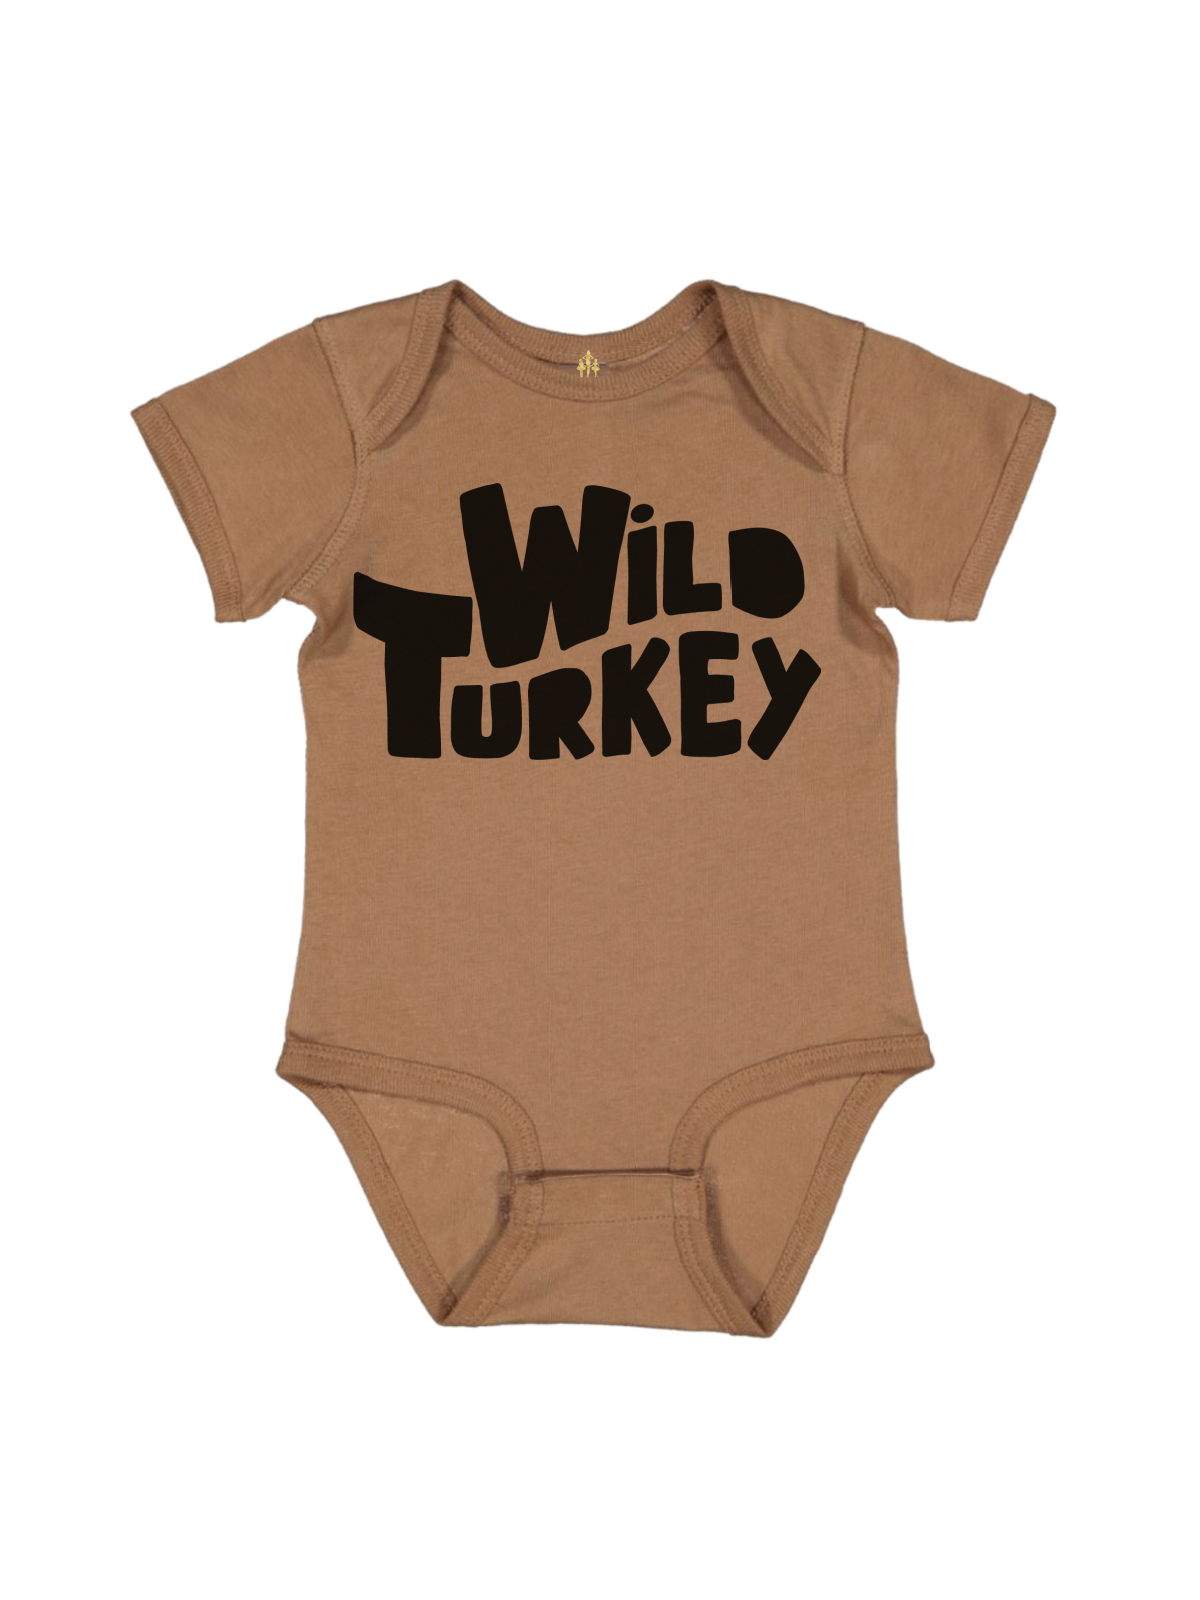 Wild Turkey Baby Thanksgiving Bodysuit in Coyote Brown